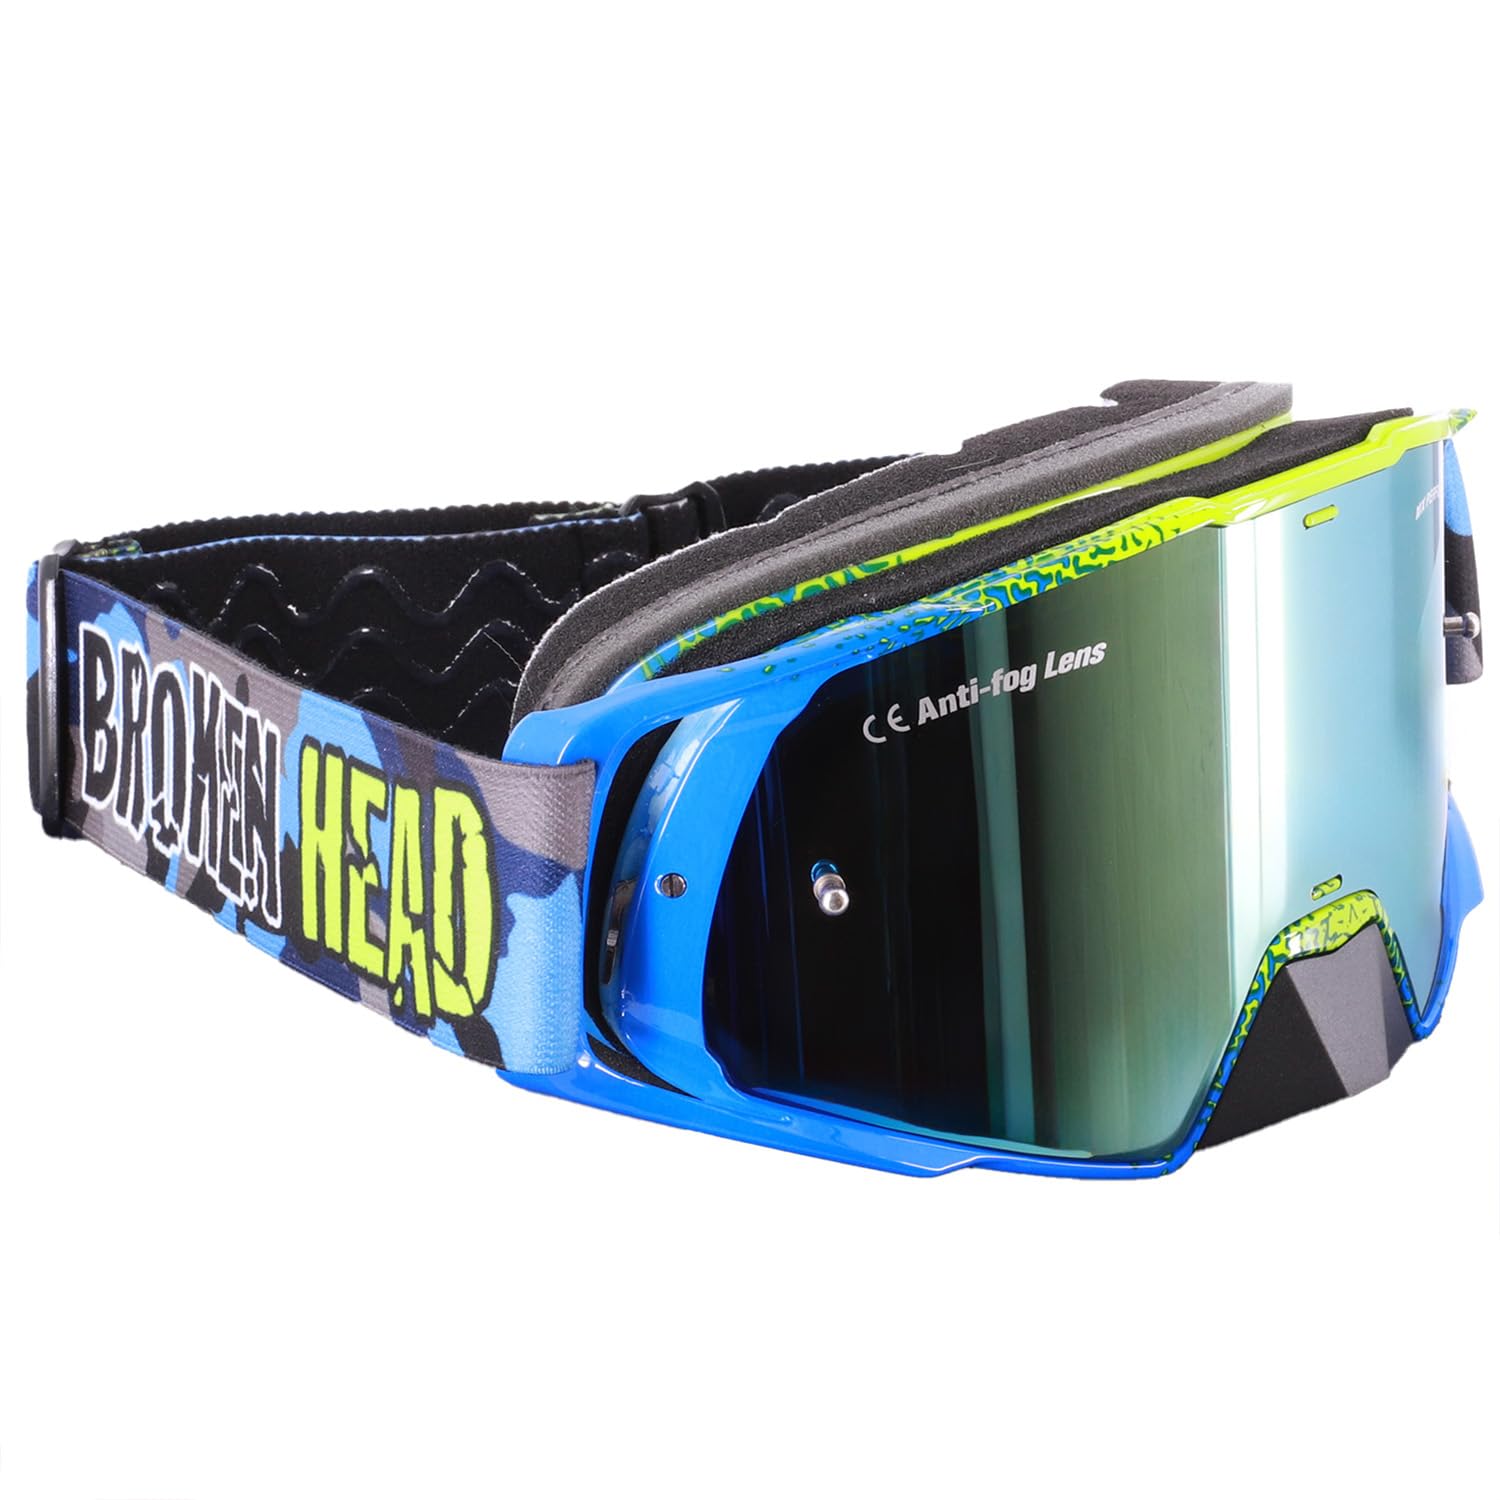 Broken Head Regulator MX Google Blau-Gelb mit verspiegeltem Glas - Motorrad-Brille Für Motocross, Enduro, Downhill, Offroad - Mit UV-Schutz